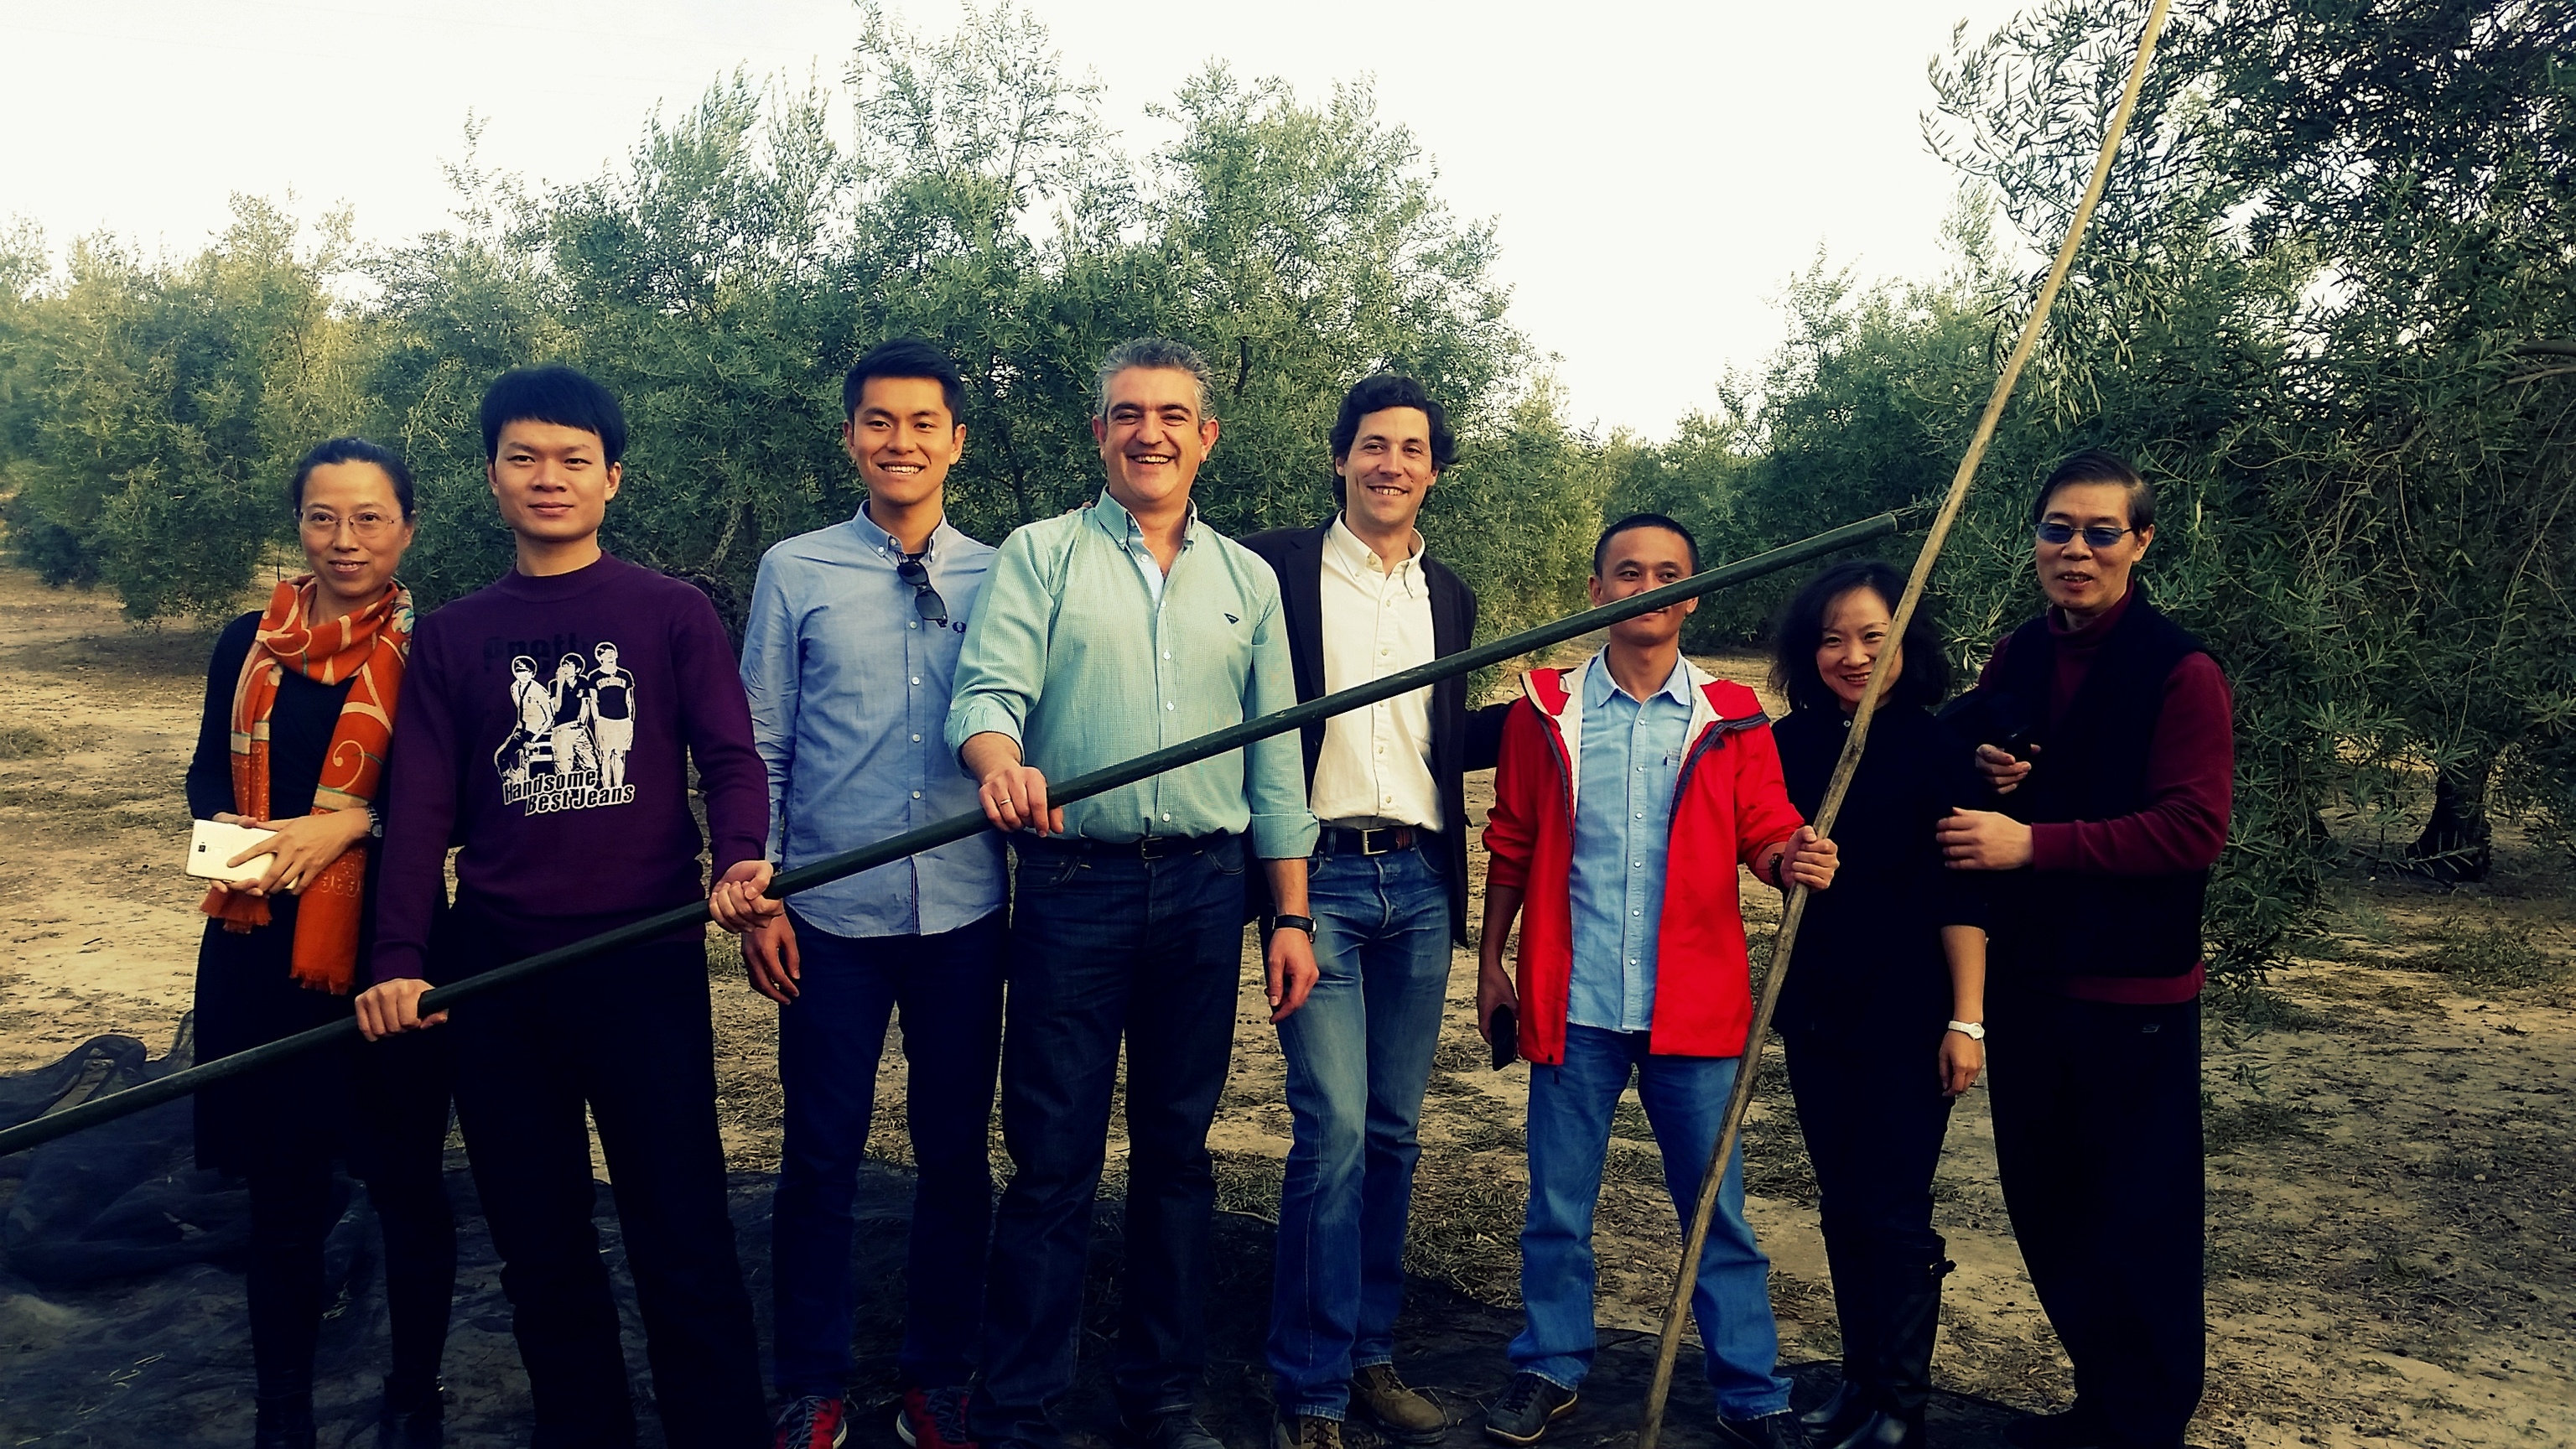 Un grupo de turistas realiza una visita guiada en un campo de olivos en Jaén